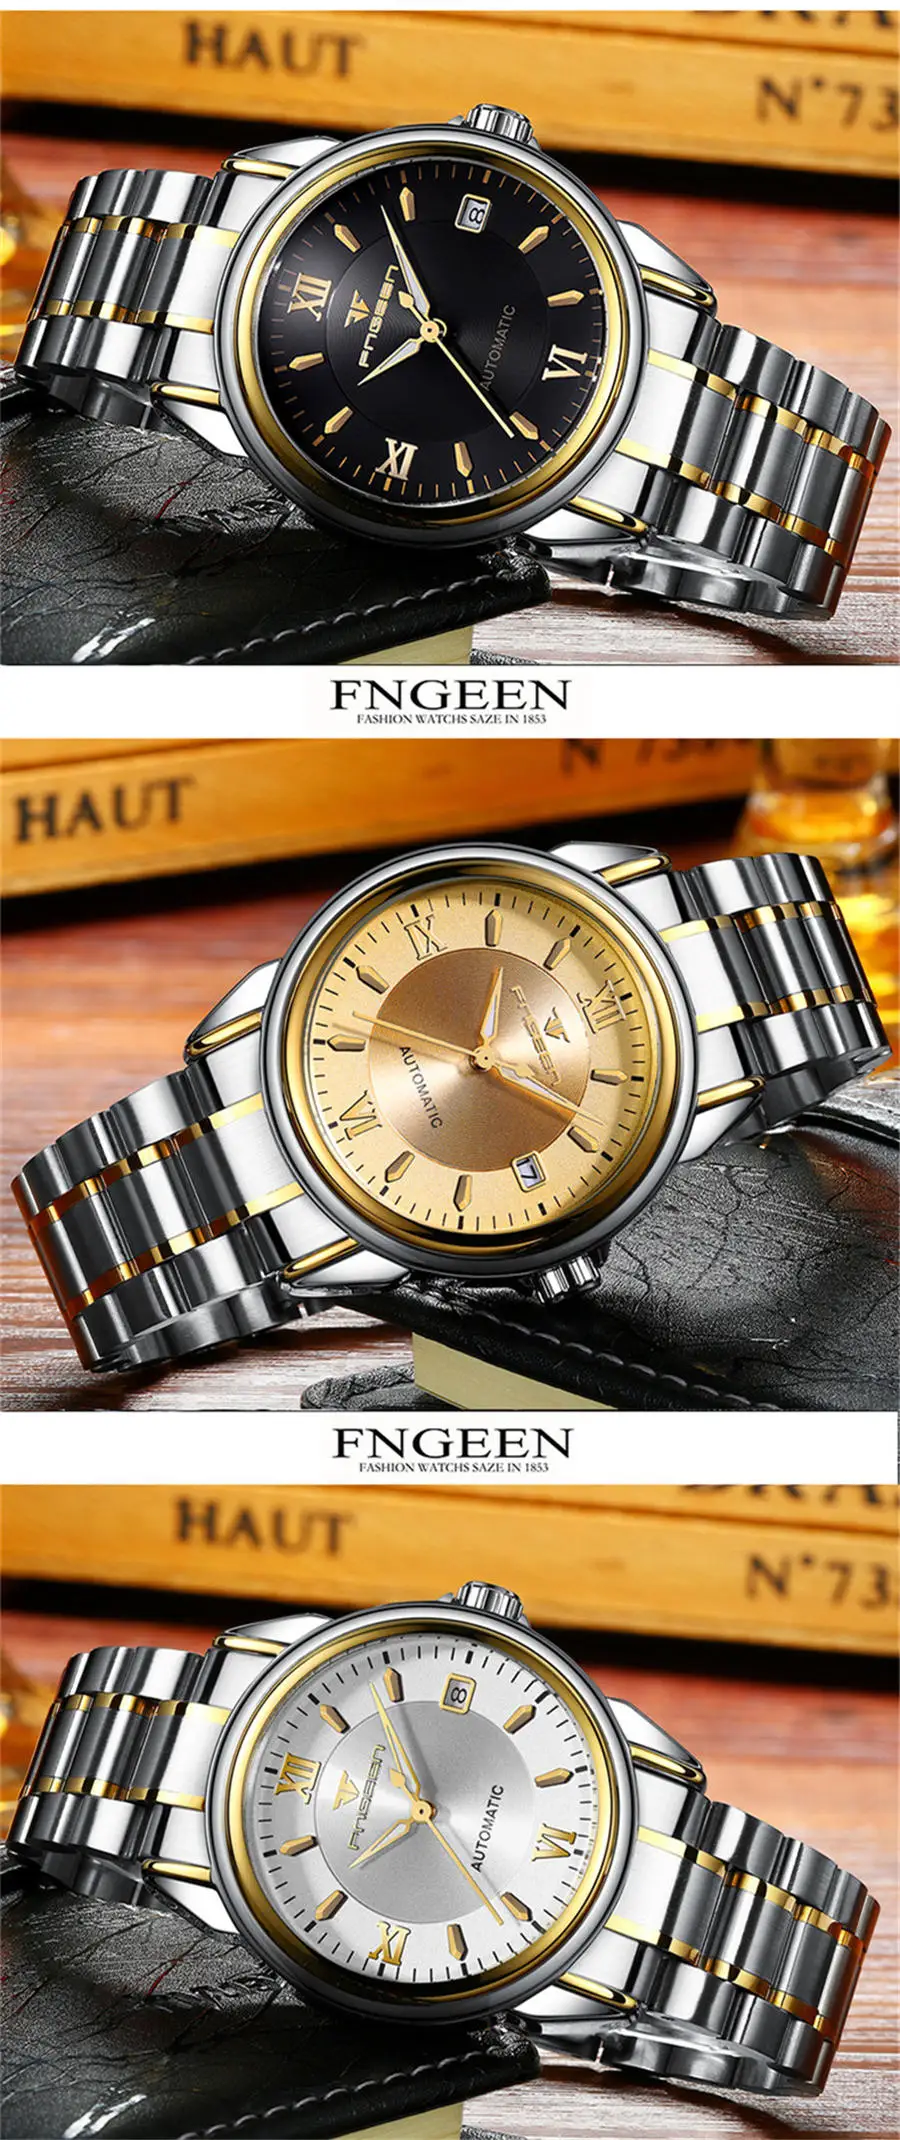 FNGEEN мужские часы Автоматическая техника рубиновые подшипники дизайн водонепроницаемый классический циферблат европейский бизнес точность с коробкой подарок